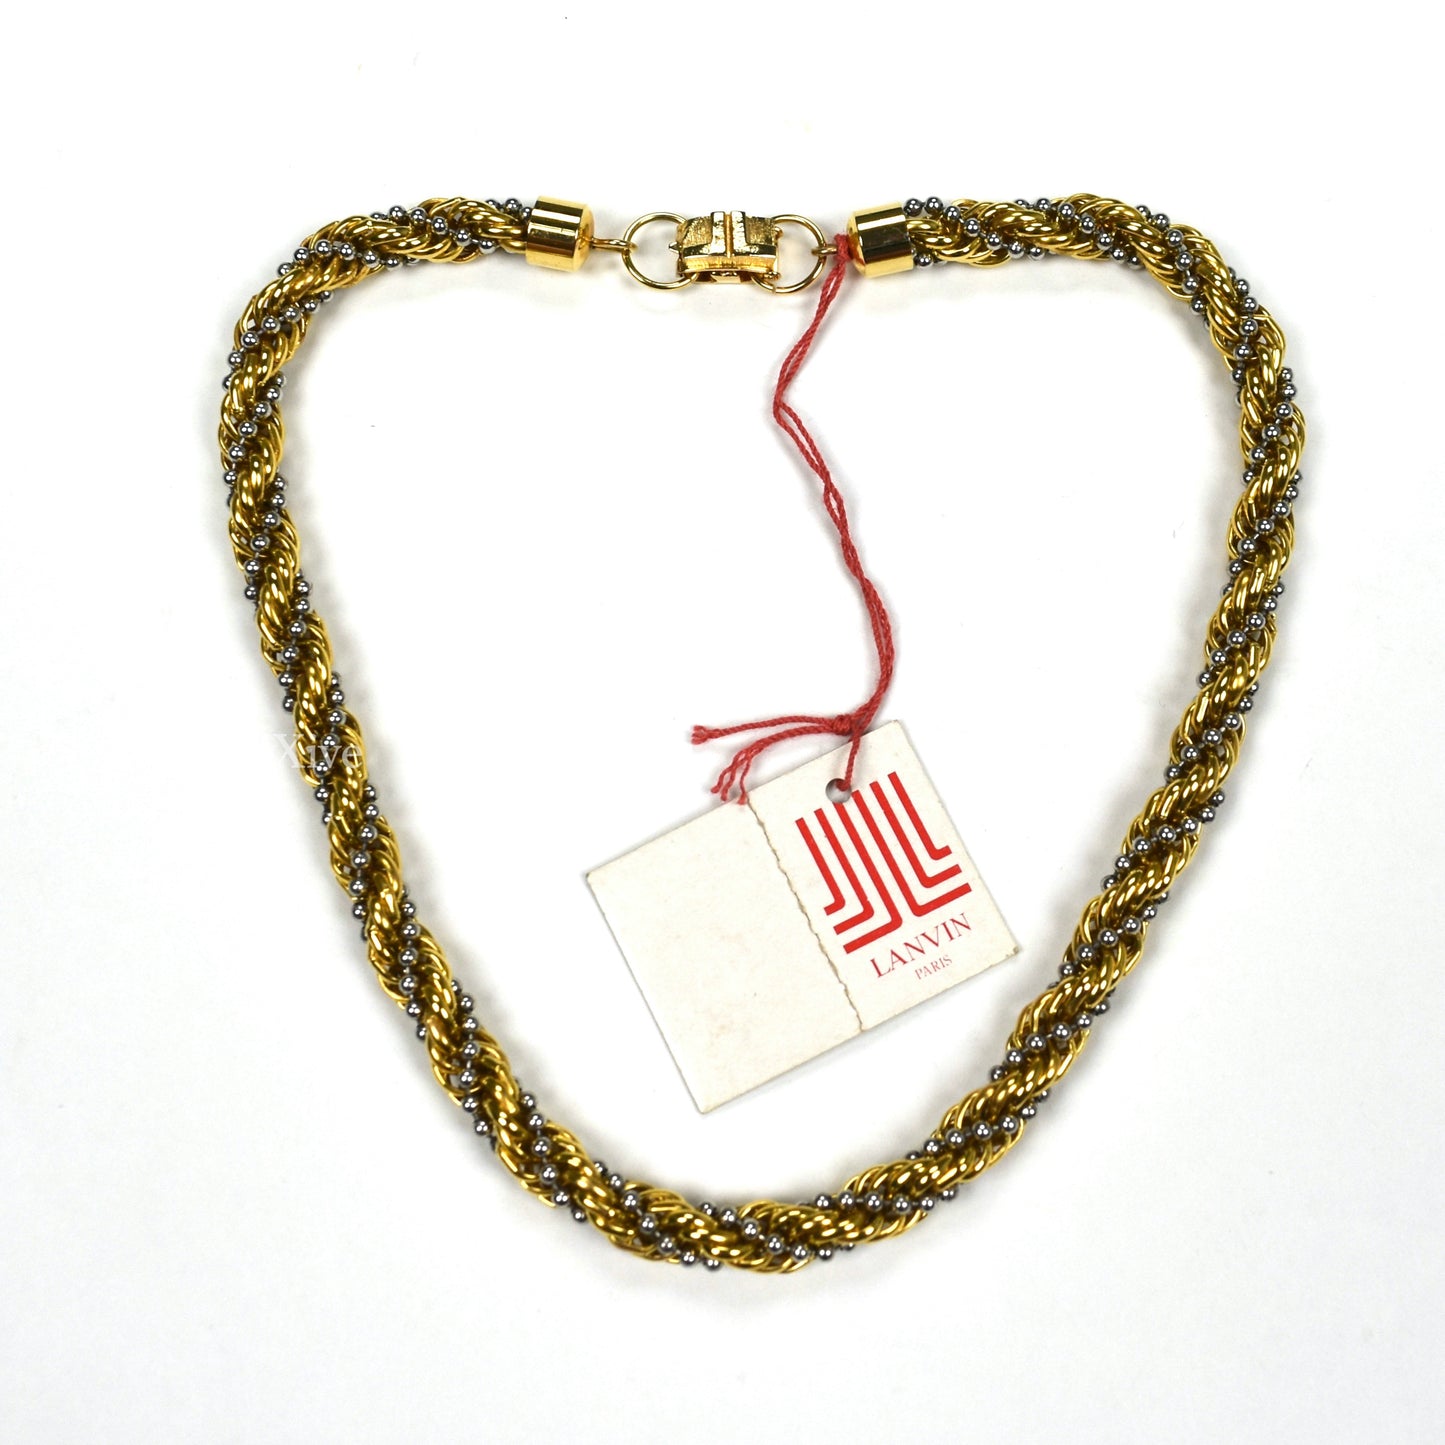 Lanvin - 15.5" Gold & Silver Twist Chain Necklace/Bracelet